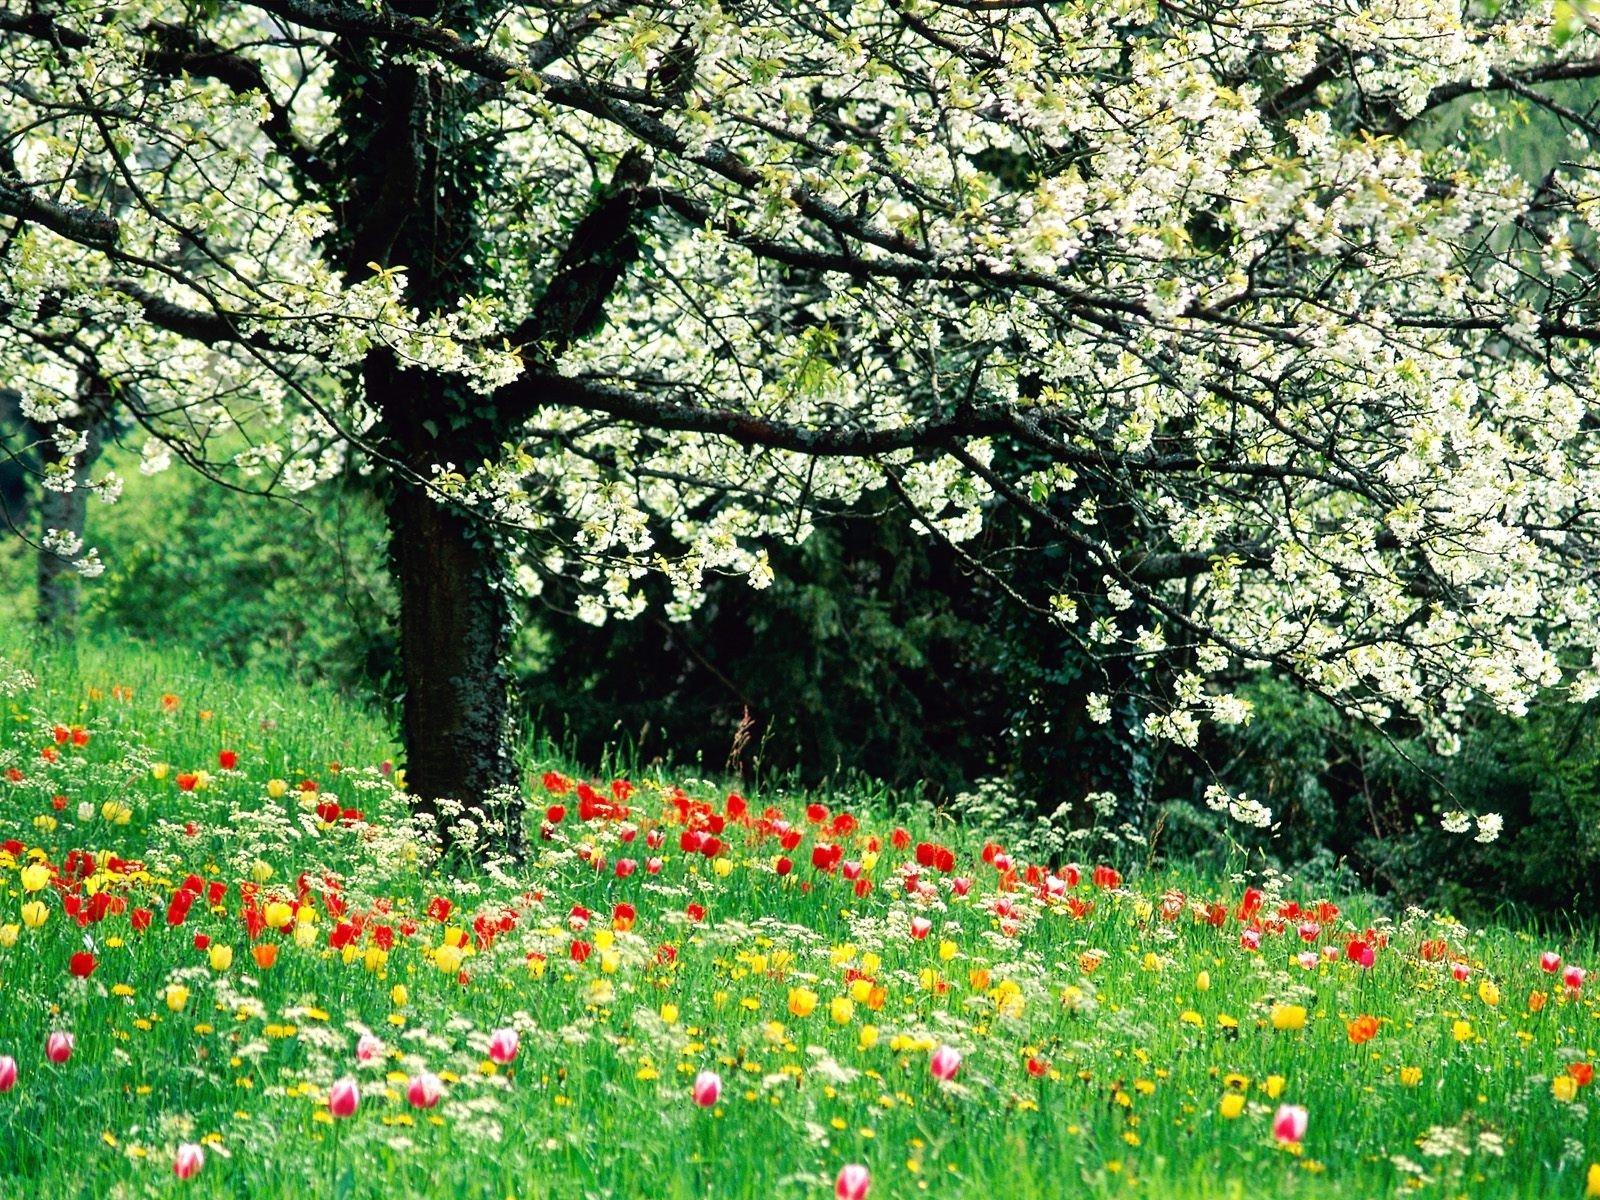 Ранней весной, в лесу можно увидеть очень красивые цветы - подснежники -  обои на рабочий стол